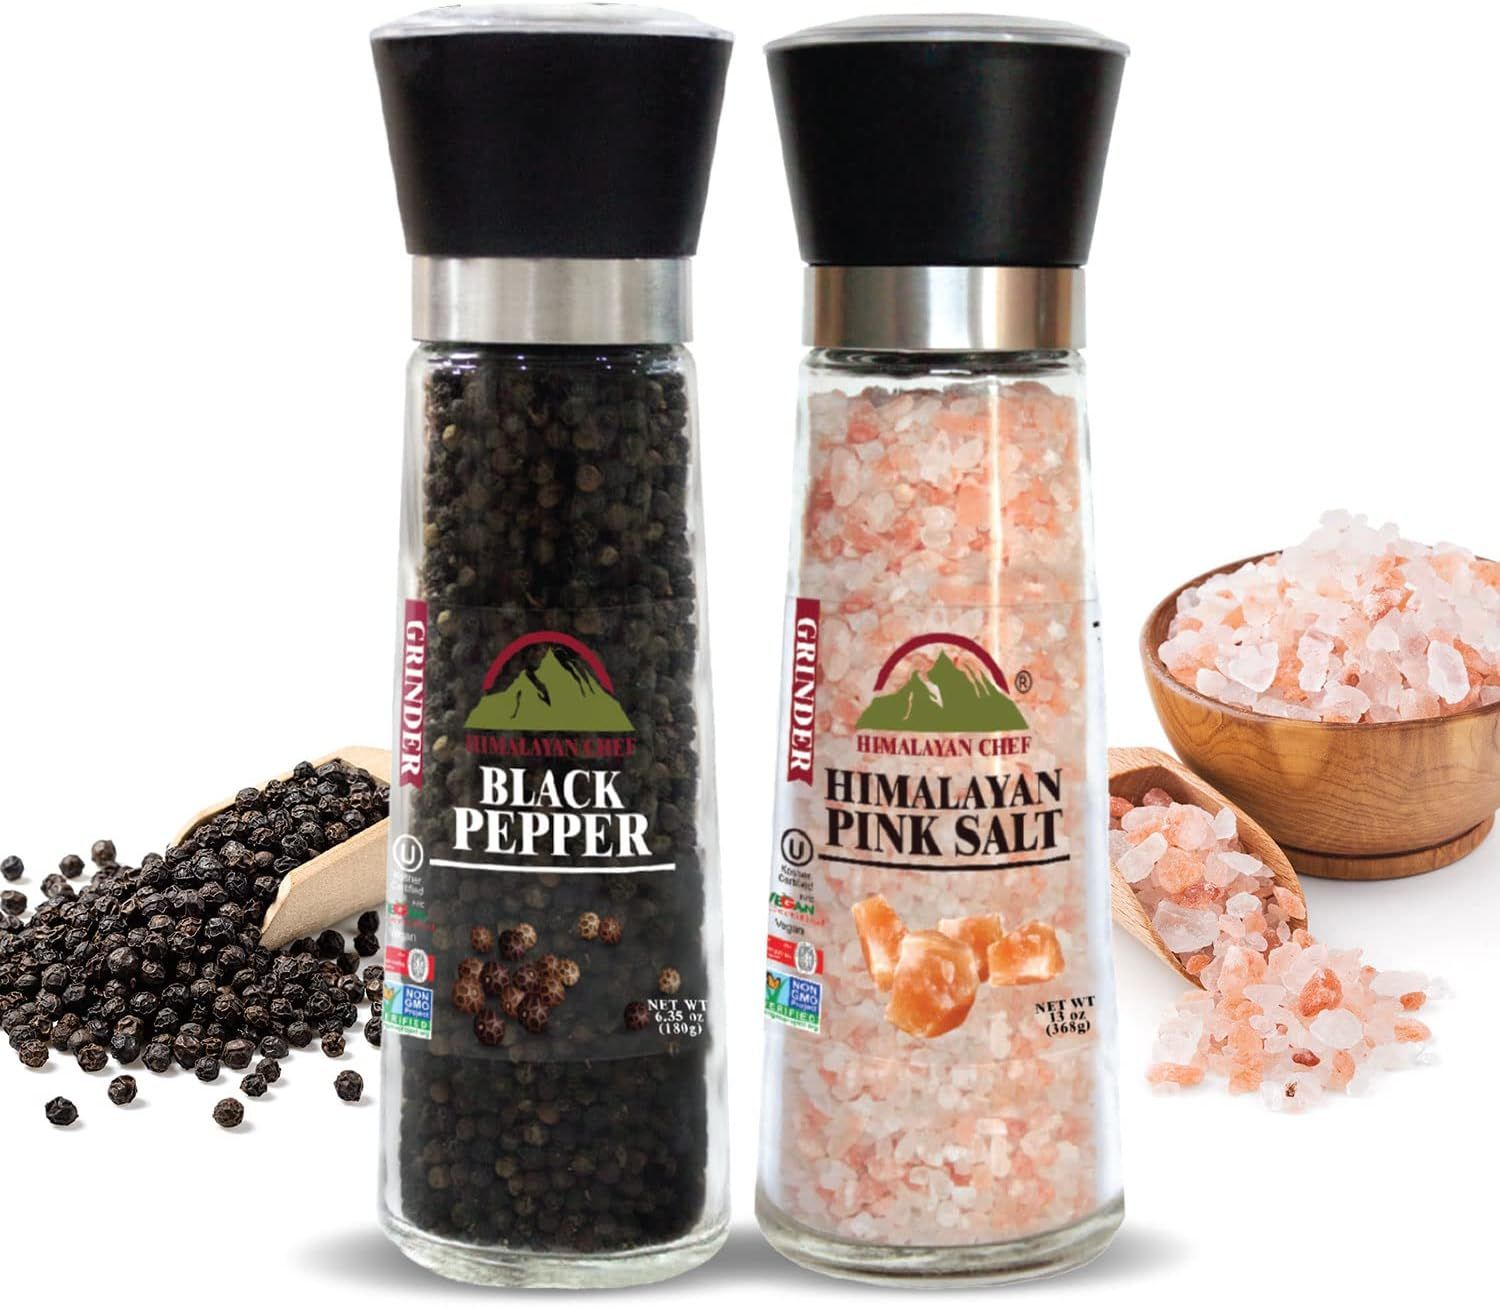 Himalayan Chef Himalayan Pink Salt & Black Pepper Grinder-Set of 2 | Amazon (US)